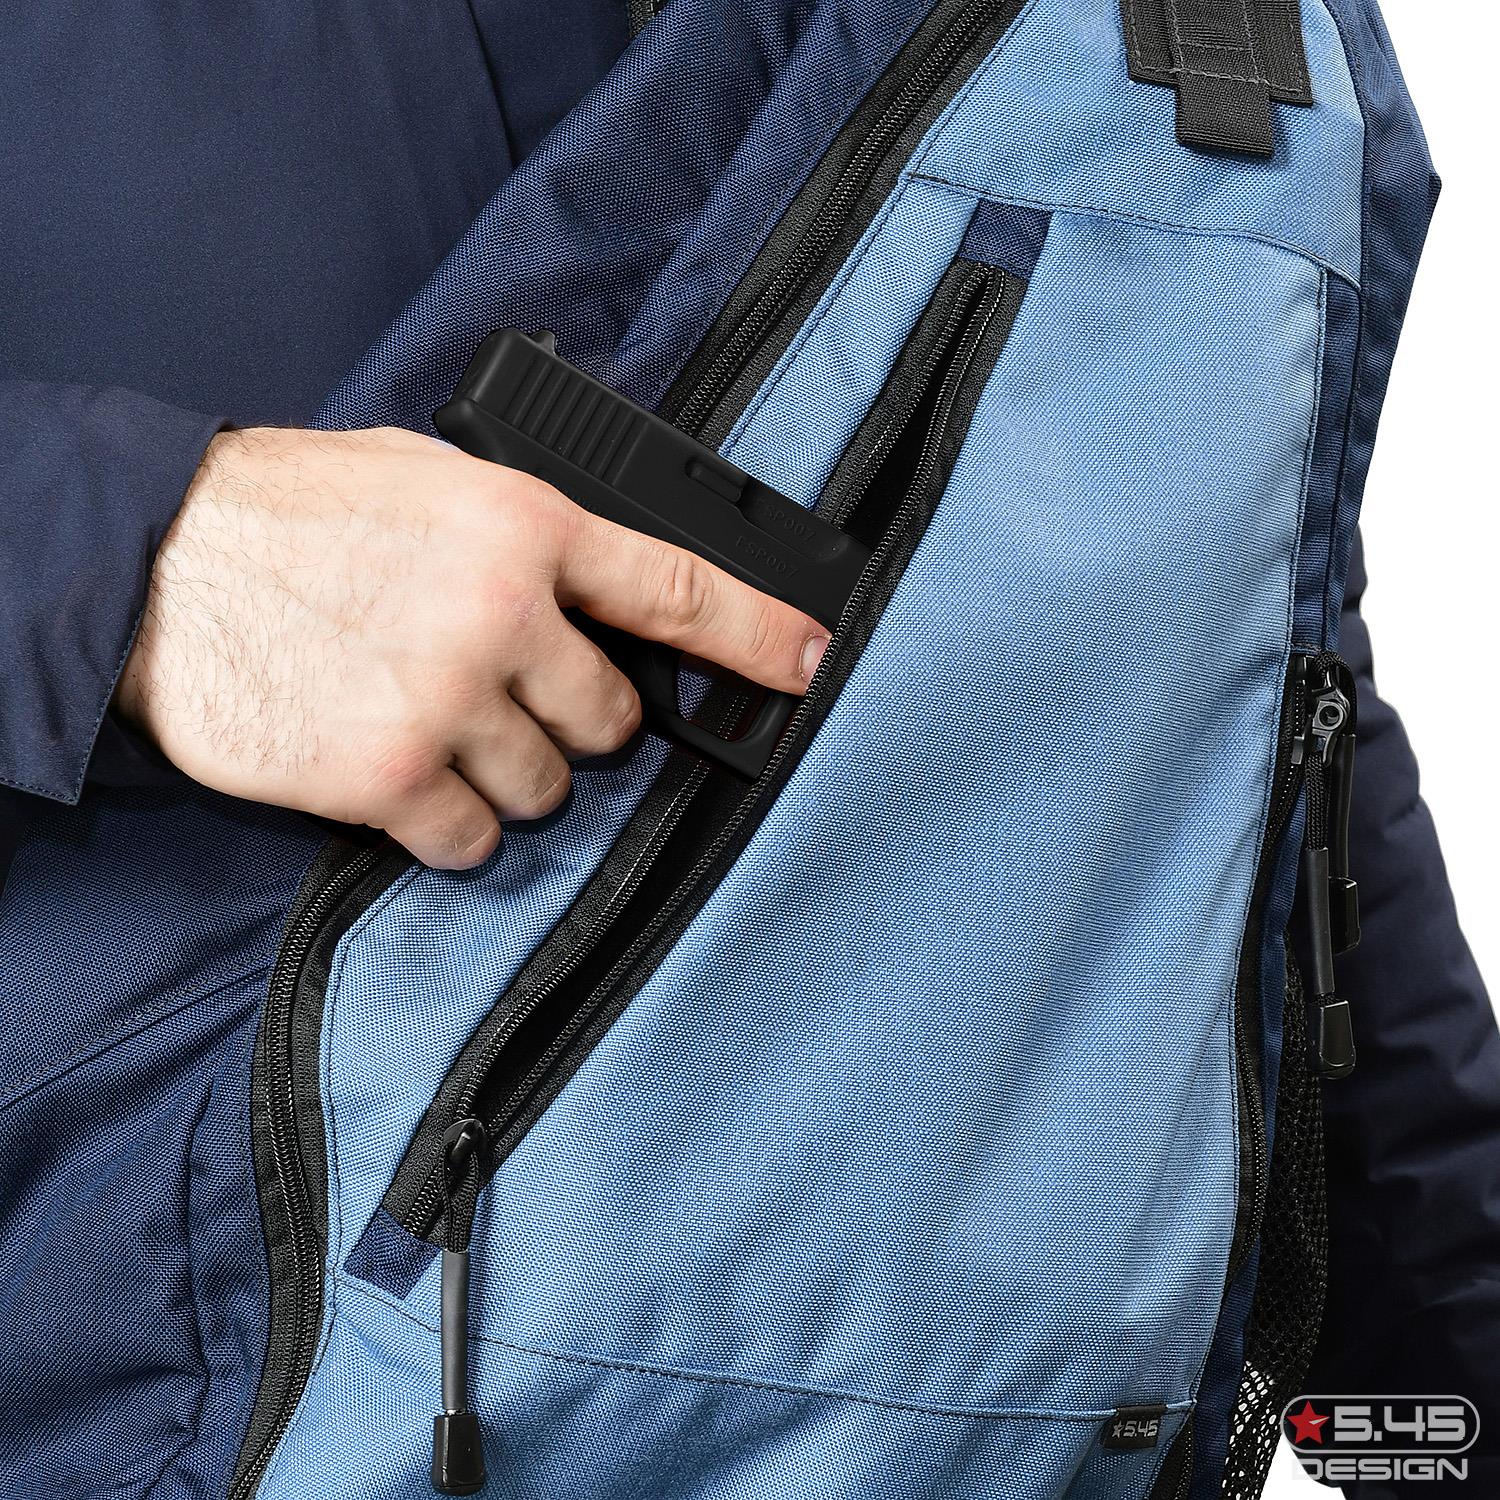 На внешней части изделия вшит карман на молнии, который можно использовать для скрытого ношения дополнительного оружия.